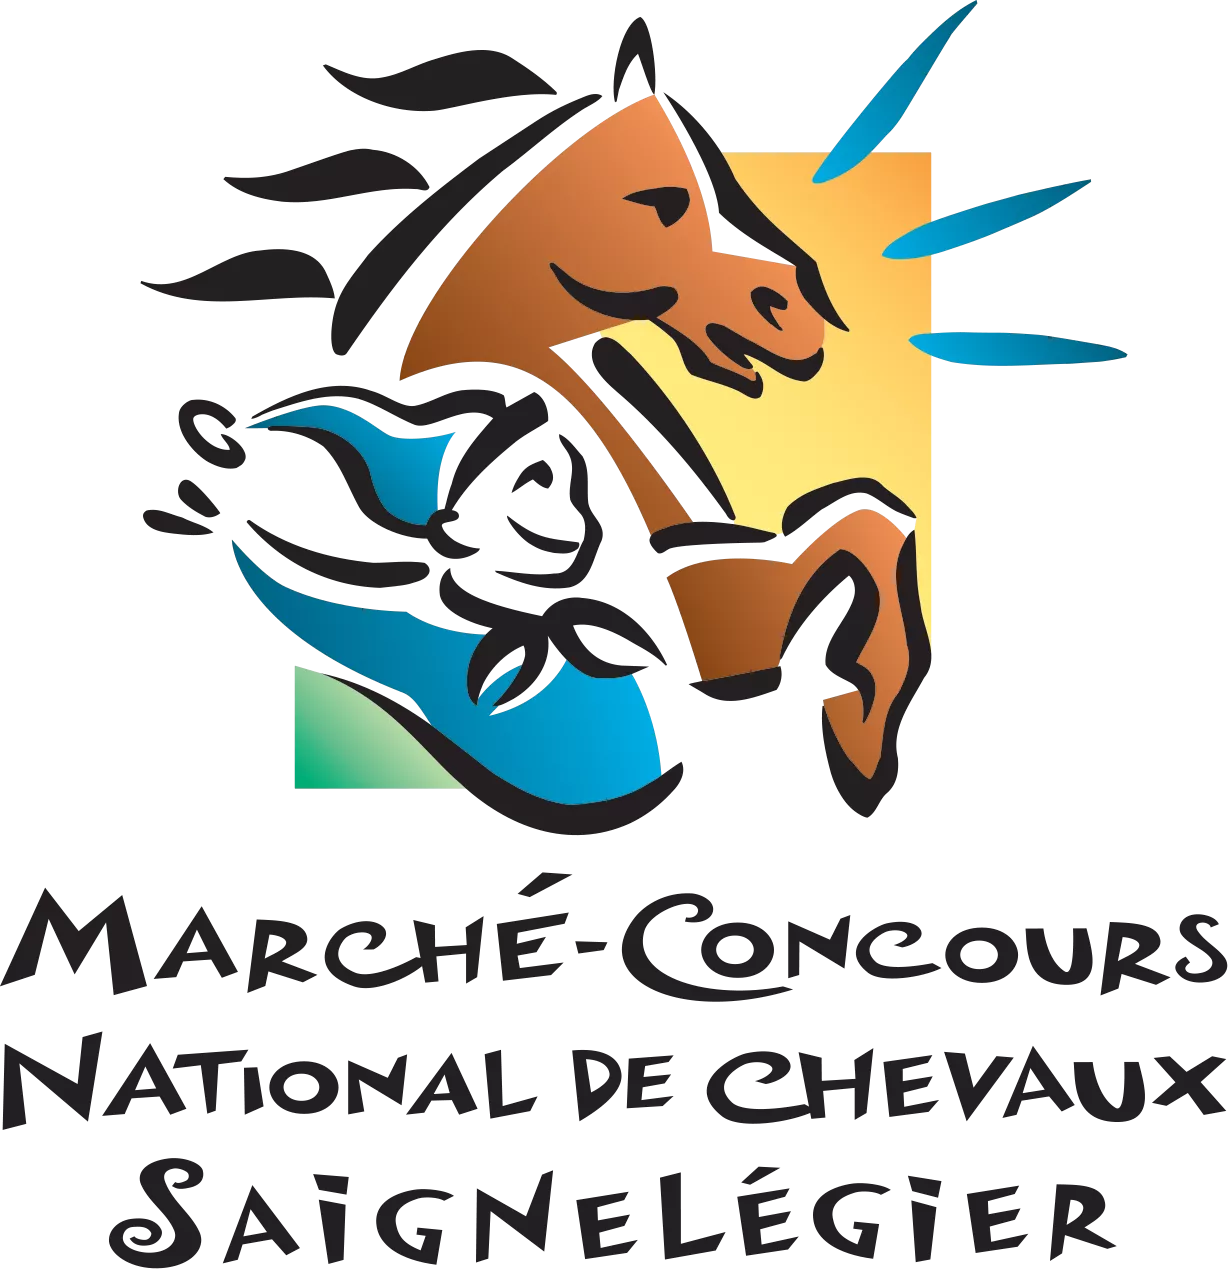 Logo Marché-Concours national de chevaux Saignelégier